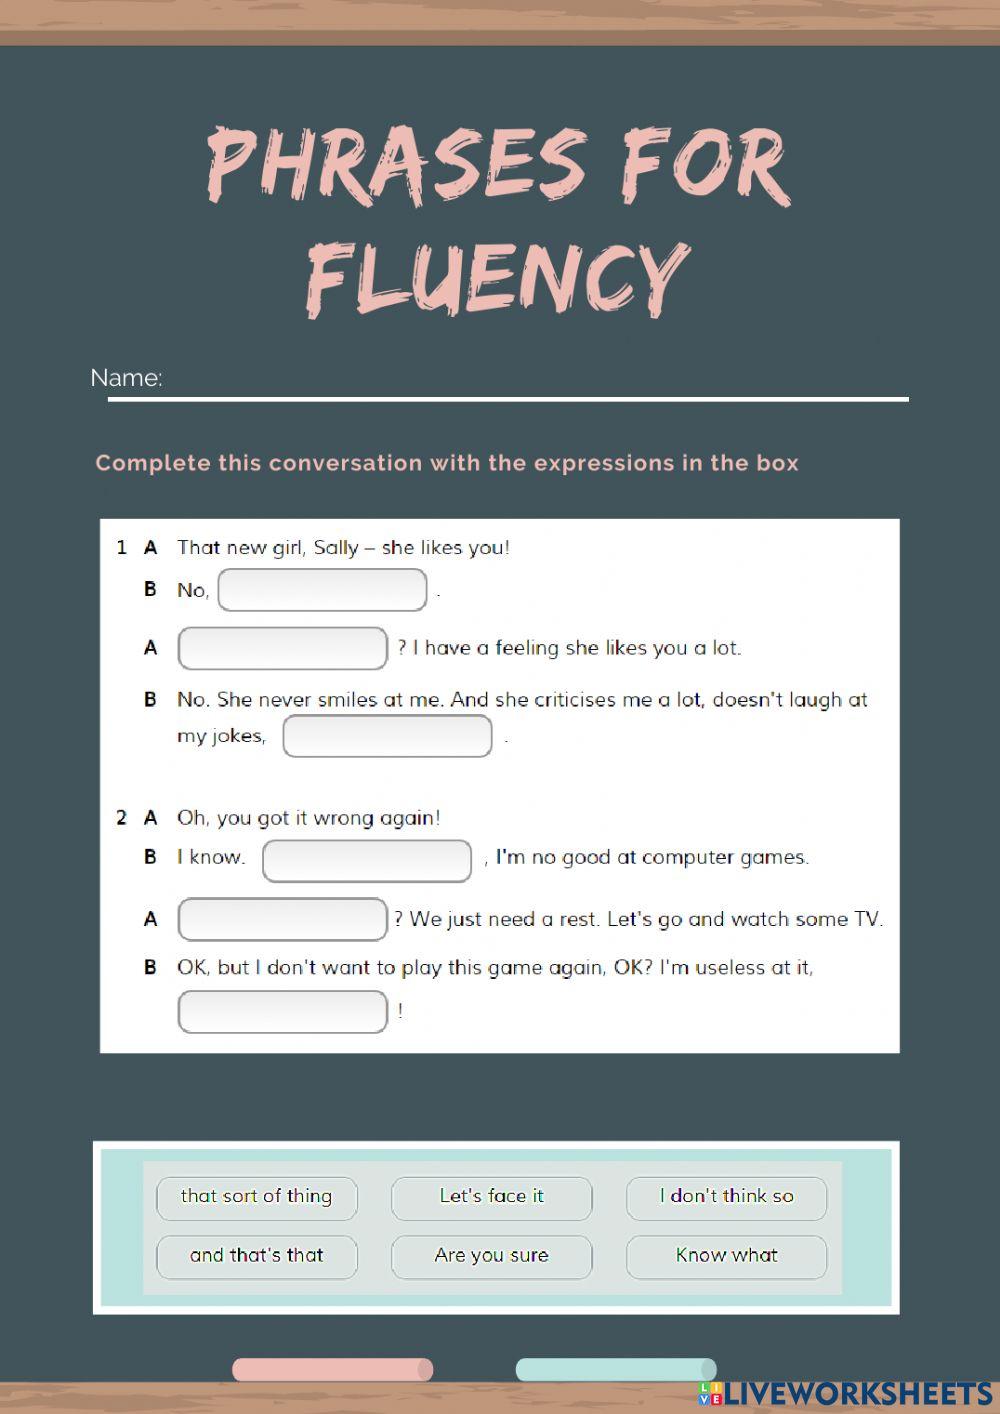 Phrases for fluency